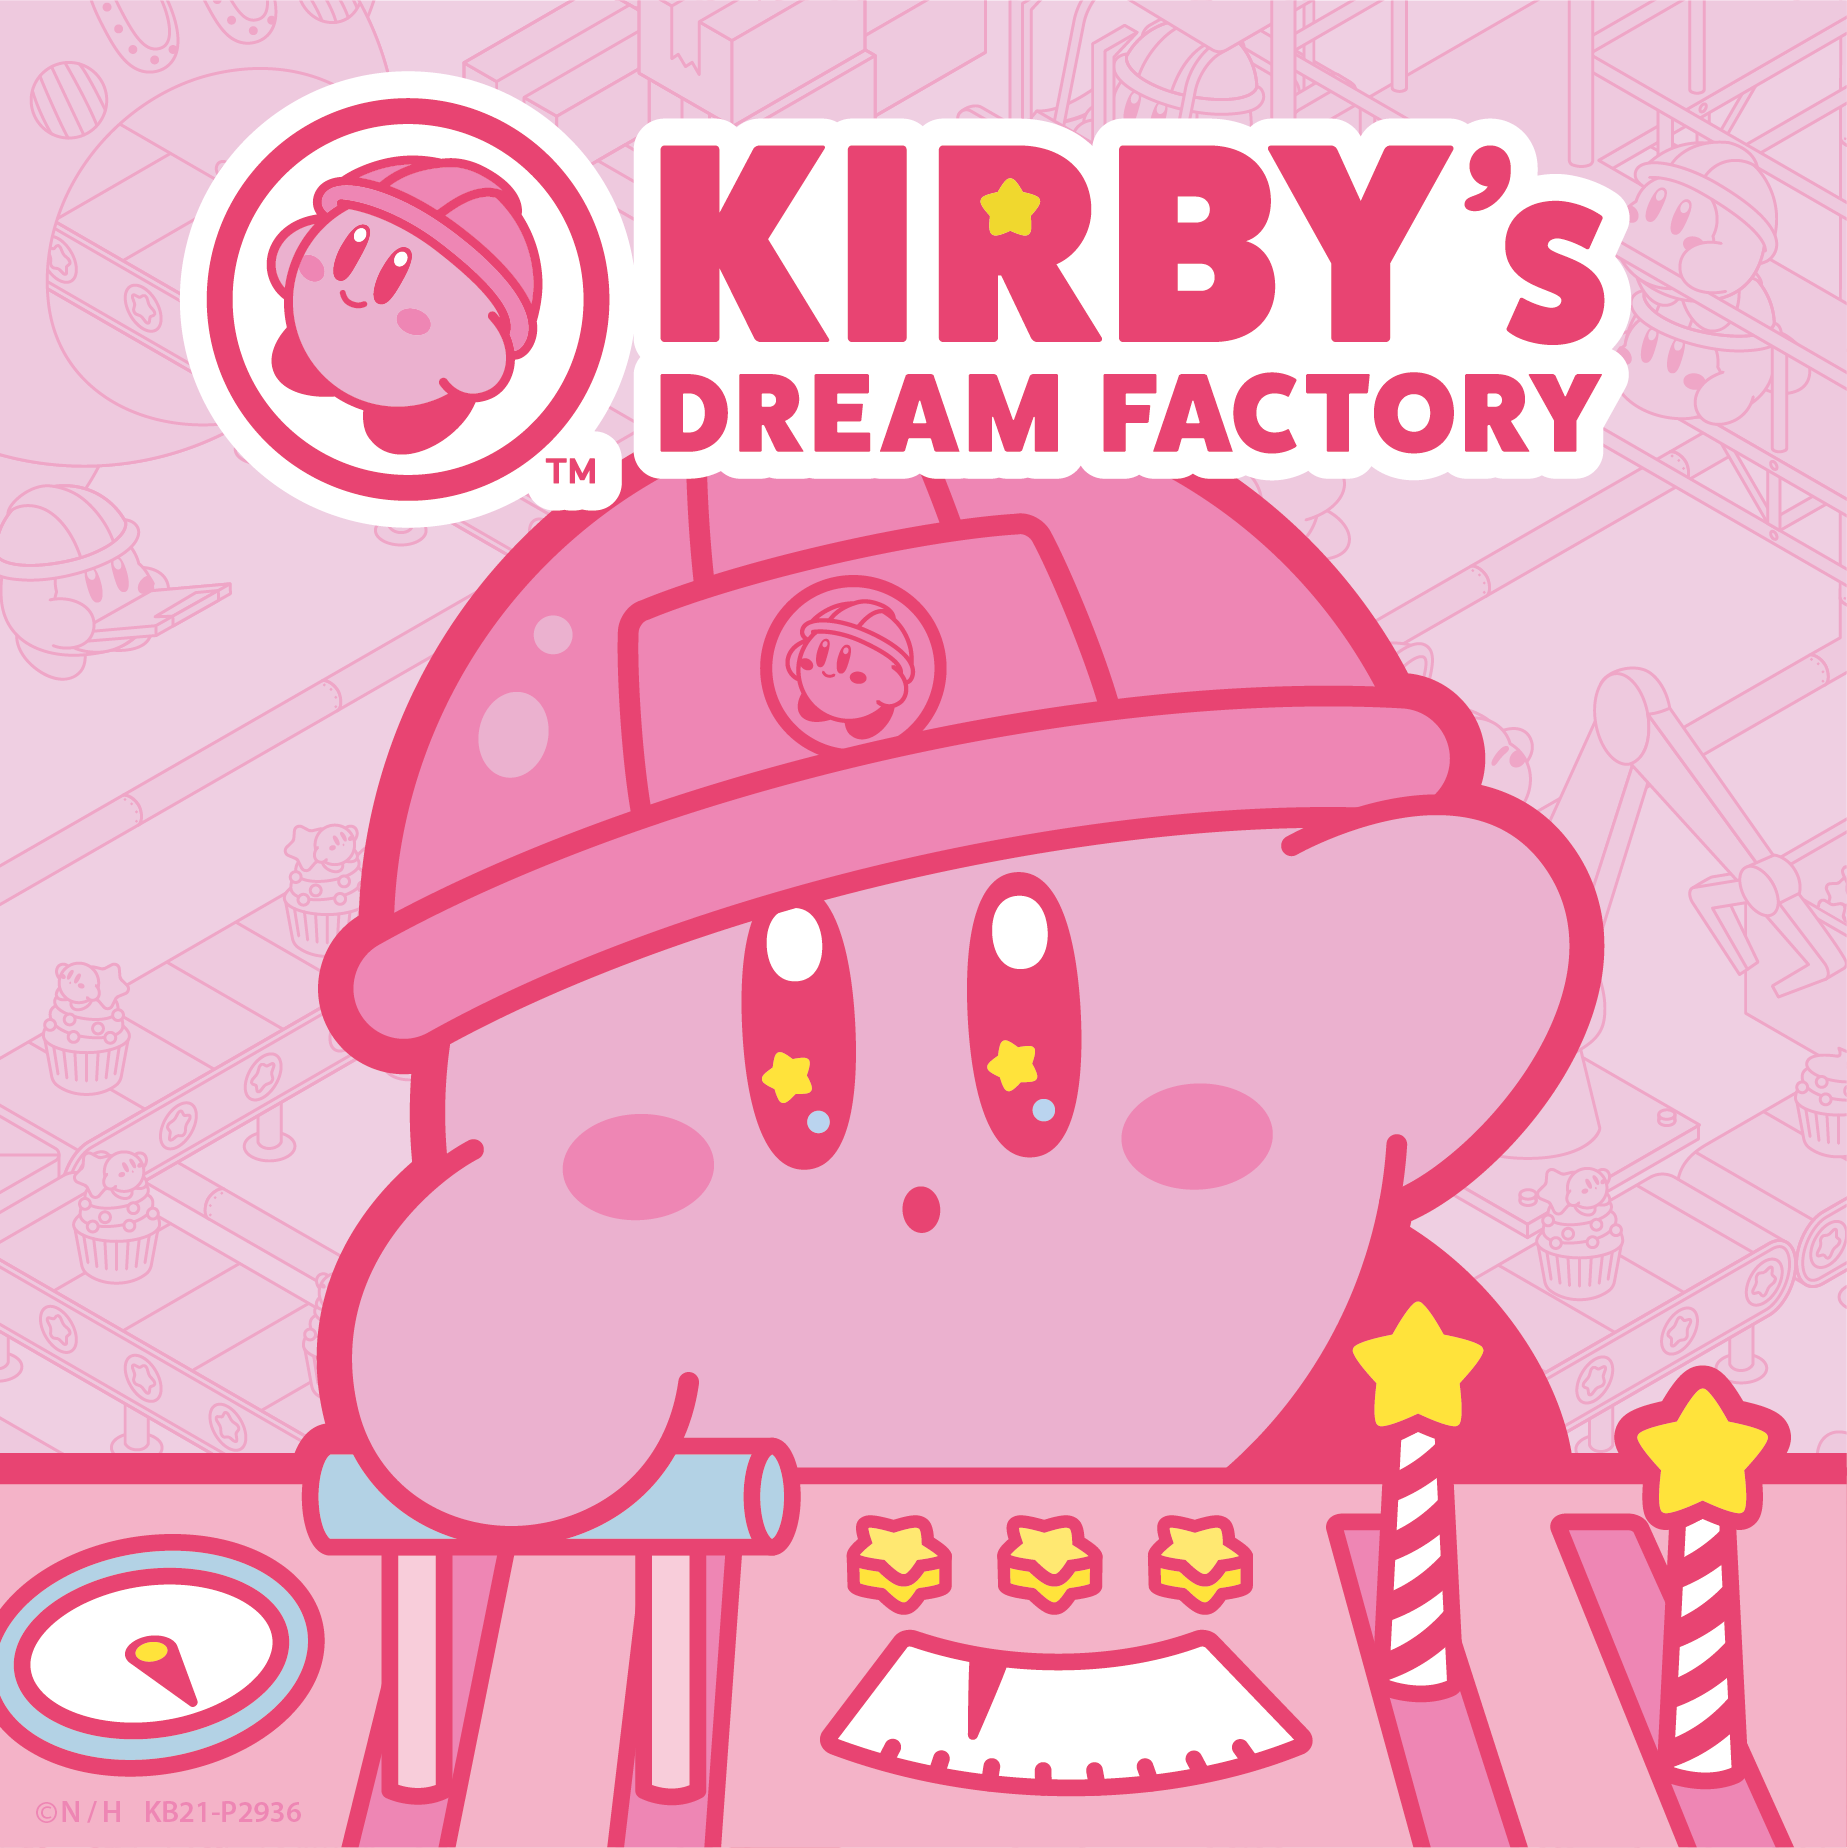 kirbys-dream-factory%ef%bc%88%e3%82%ab%e3%83%bc%e3%83%92%e3%82%99%e3%82%a3%e3%81%ae%e3%83%88%e3%82%99%e3%83%aa%e3%83%bc%e3%83%a0%e3%83%95%e3%82%a1%e3%82%af%e3%83%88%e3%83%aa%e3%83%bc%ef%bc%89-16